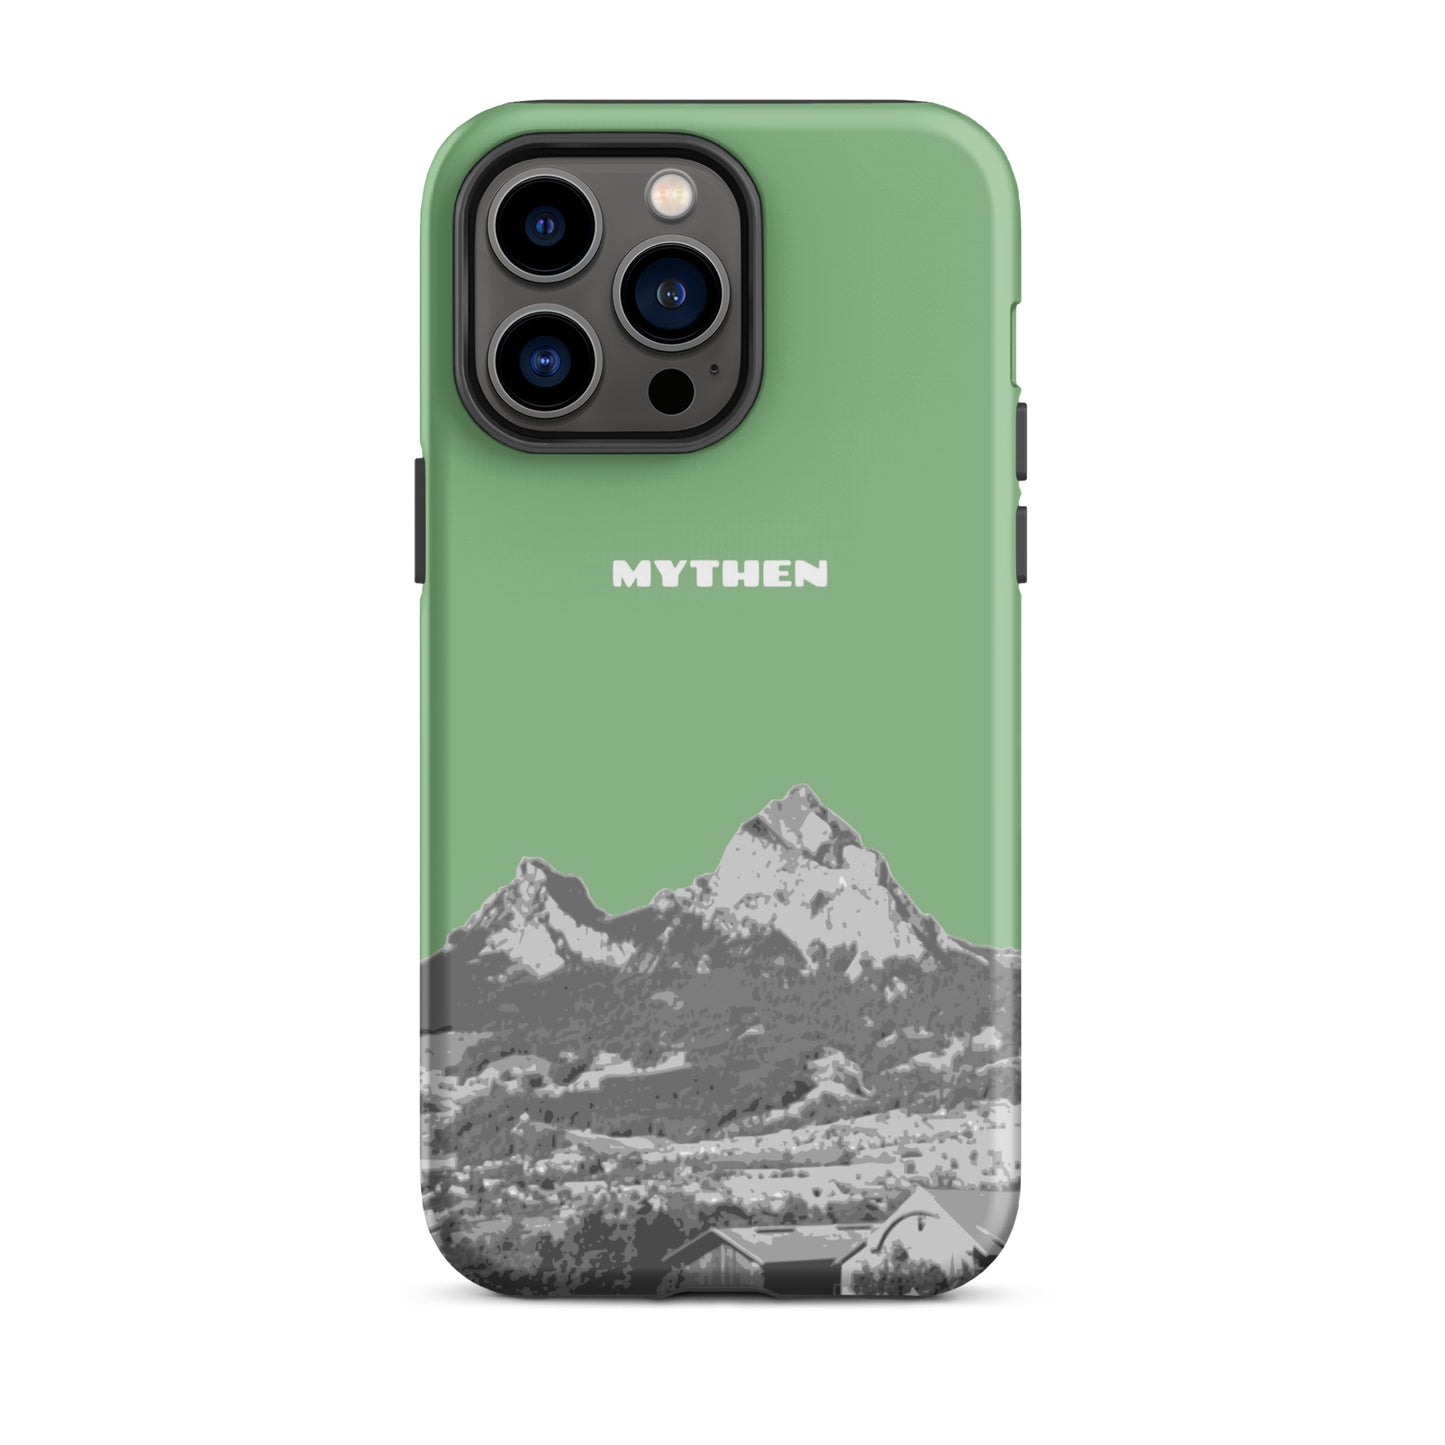 Hülle für das iPhone 14 Pro Max von Apple in der Farbe Hellgrün, dass den Grossen Mythen und den Kleinen Mythen bei Schwyz zeigt. 